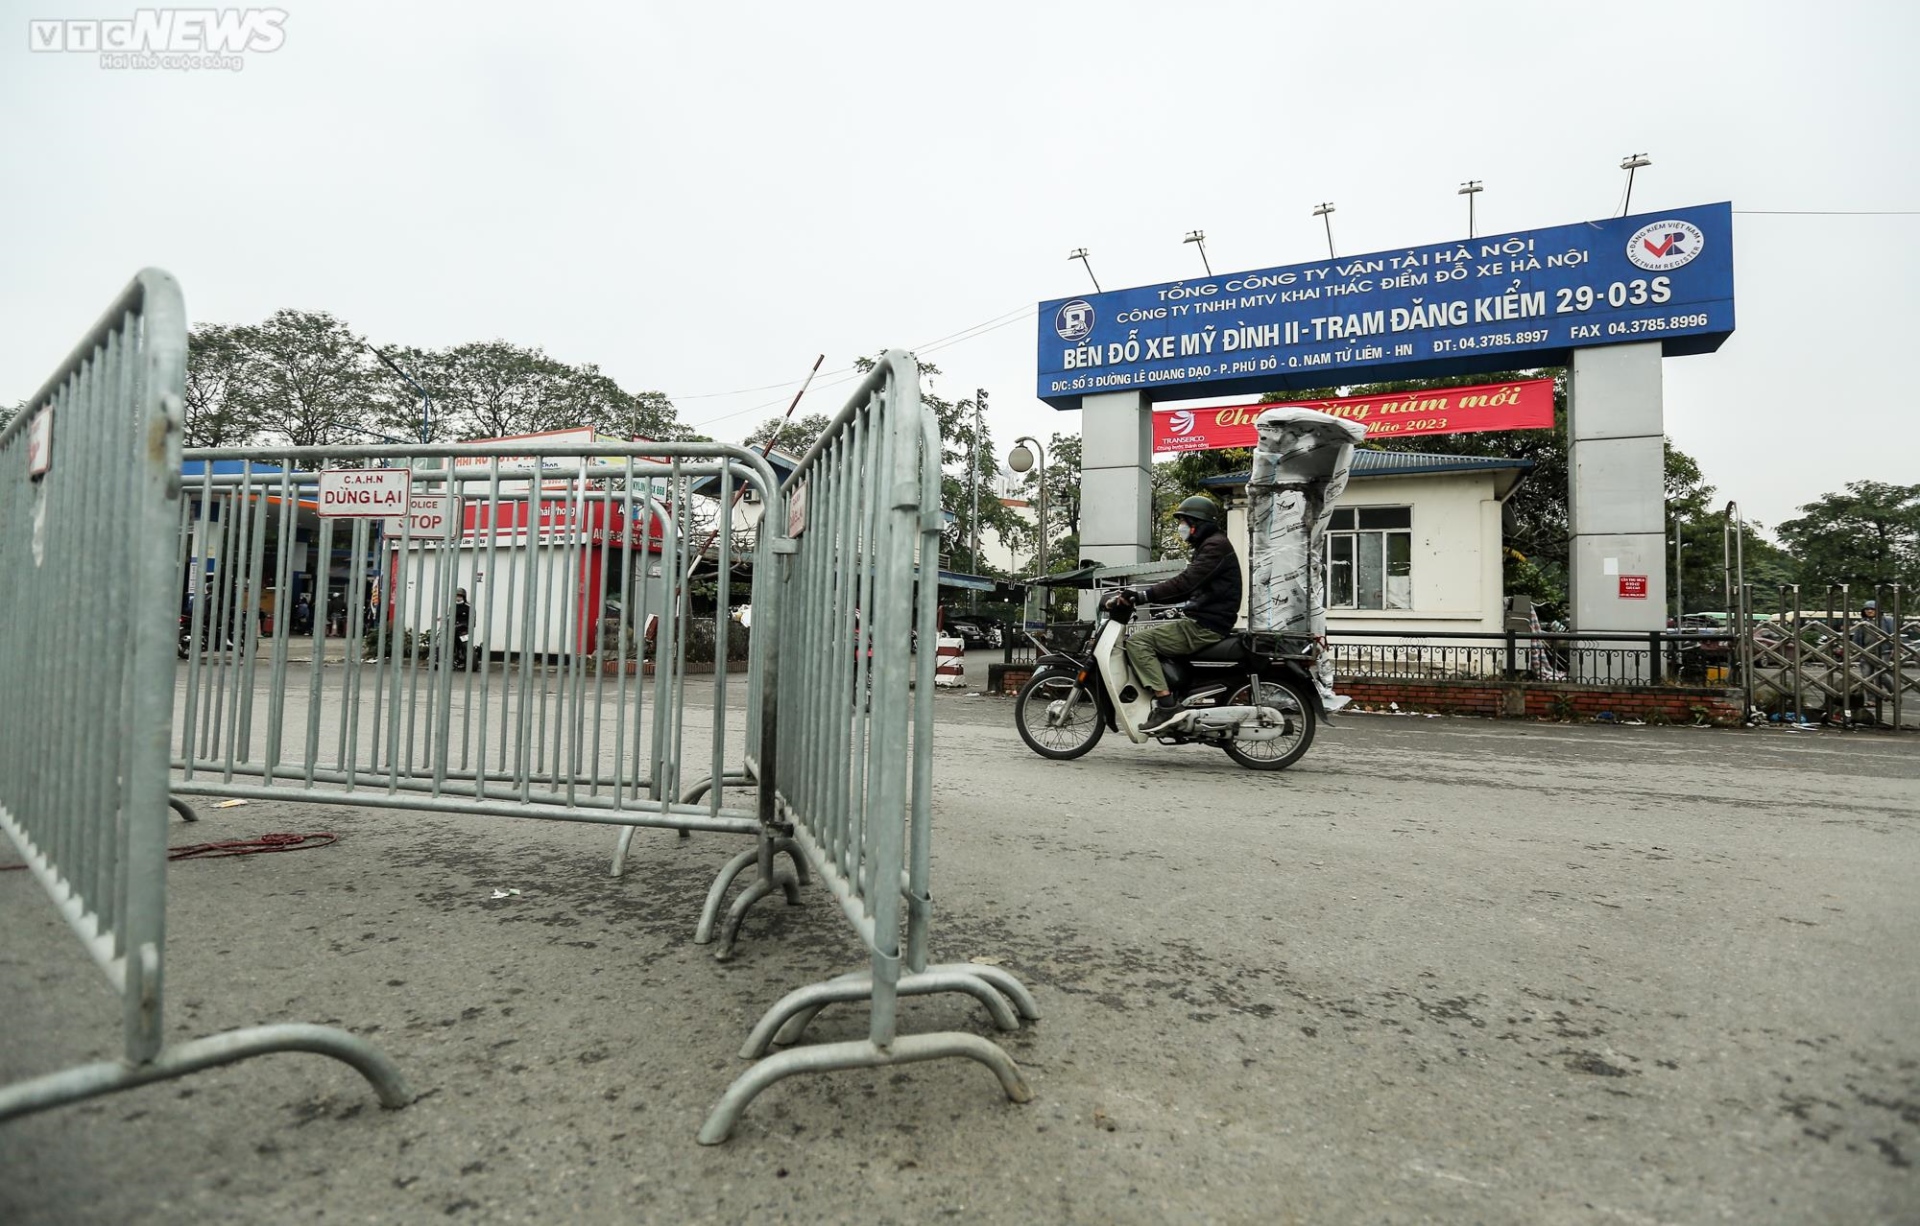 Cảnh ‘cửa đóng then cài’ của các trung tâm đăng kiểm ở Hà Nội - Ảnh 6.